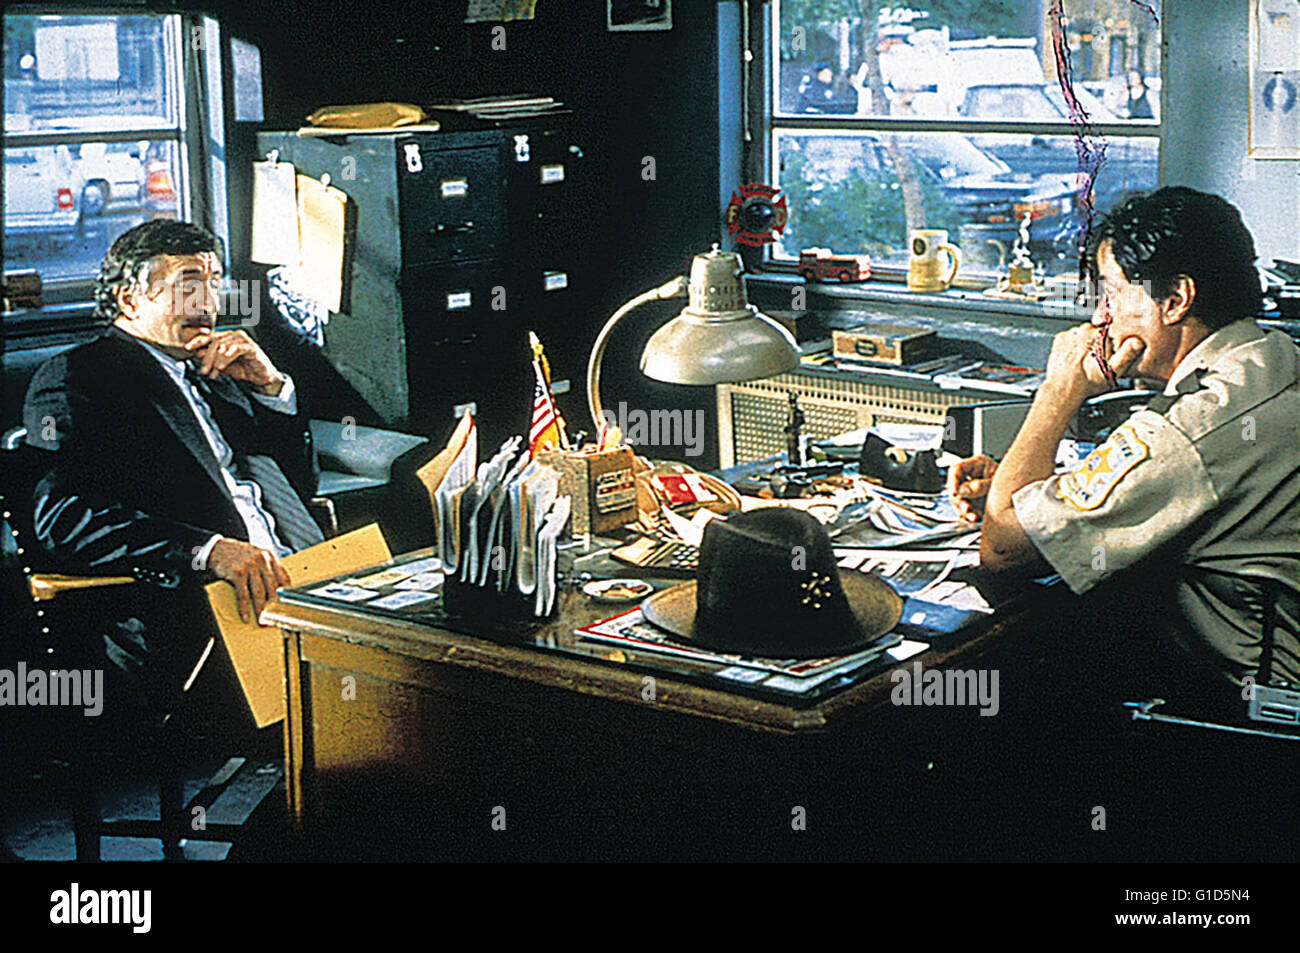 Cop Land / Robert de Niro / Sylvester Stallone, Stock Photo